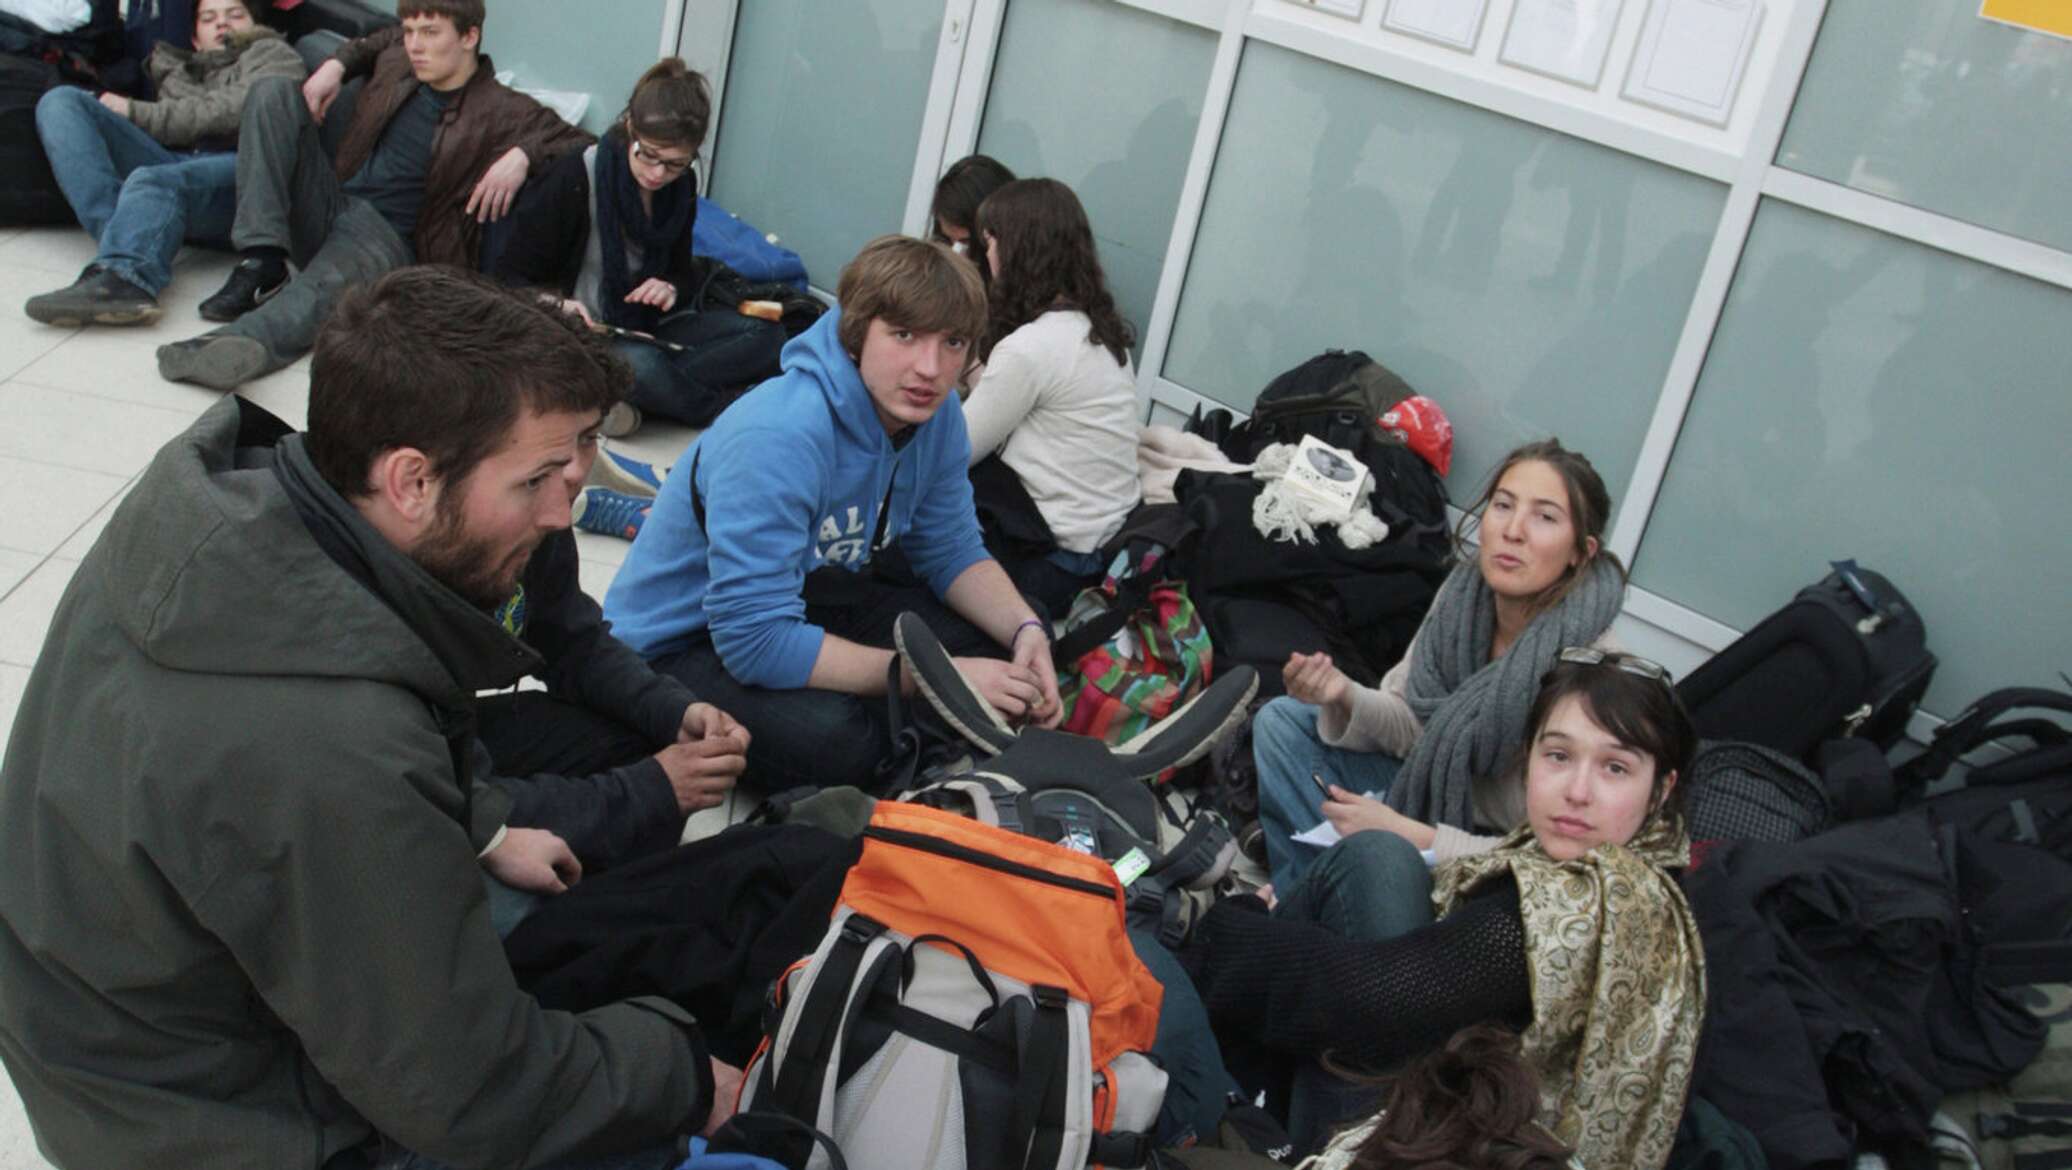 Таджики в москве новости последние. Граждан Таджикистана в аэропорт. Таджики в российских аэропортах. Таджики в аэропорту. Очередь на посадку в аэропорту.